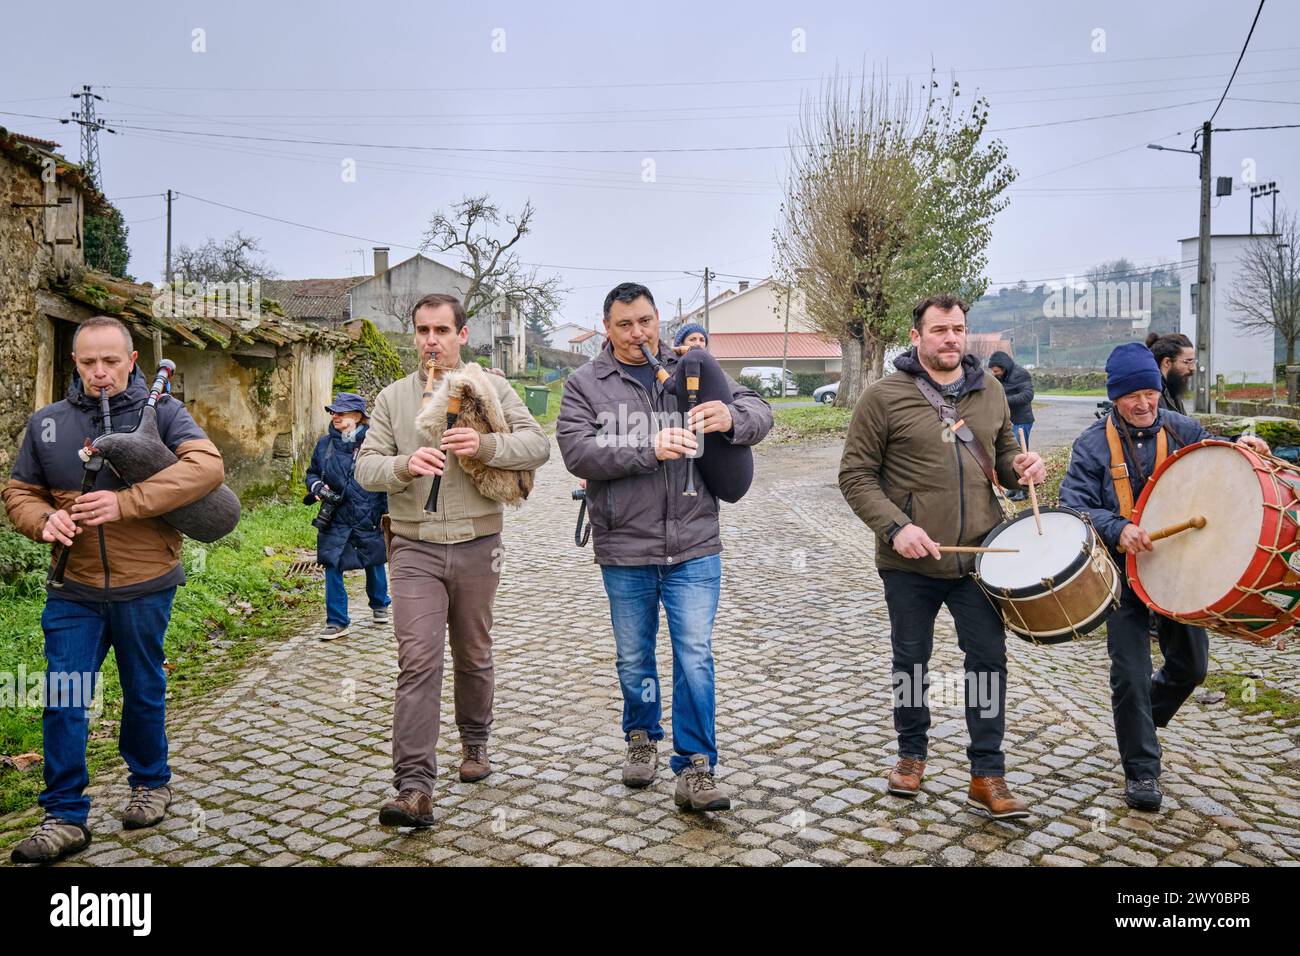 Les musiciens, avec des cornemuses et des tambours, jouent pendant les festivités du solstice d'hiver. Constantim, Miranda do Douro. Portugal Banque D'Images